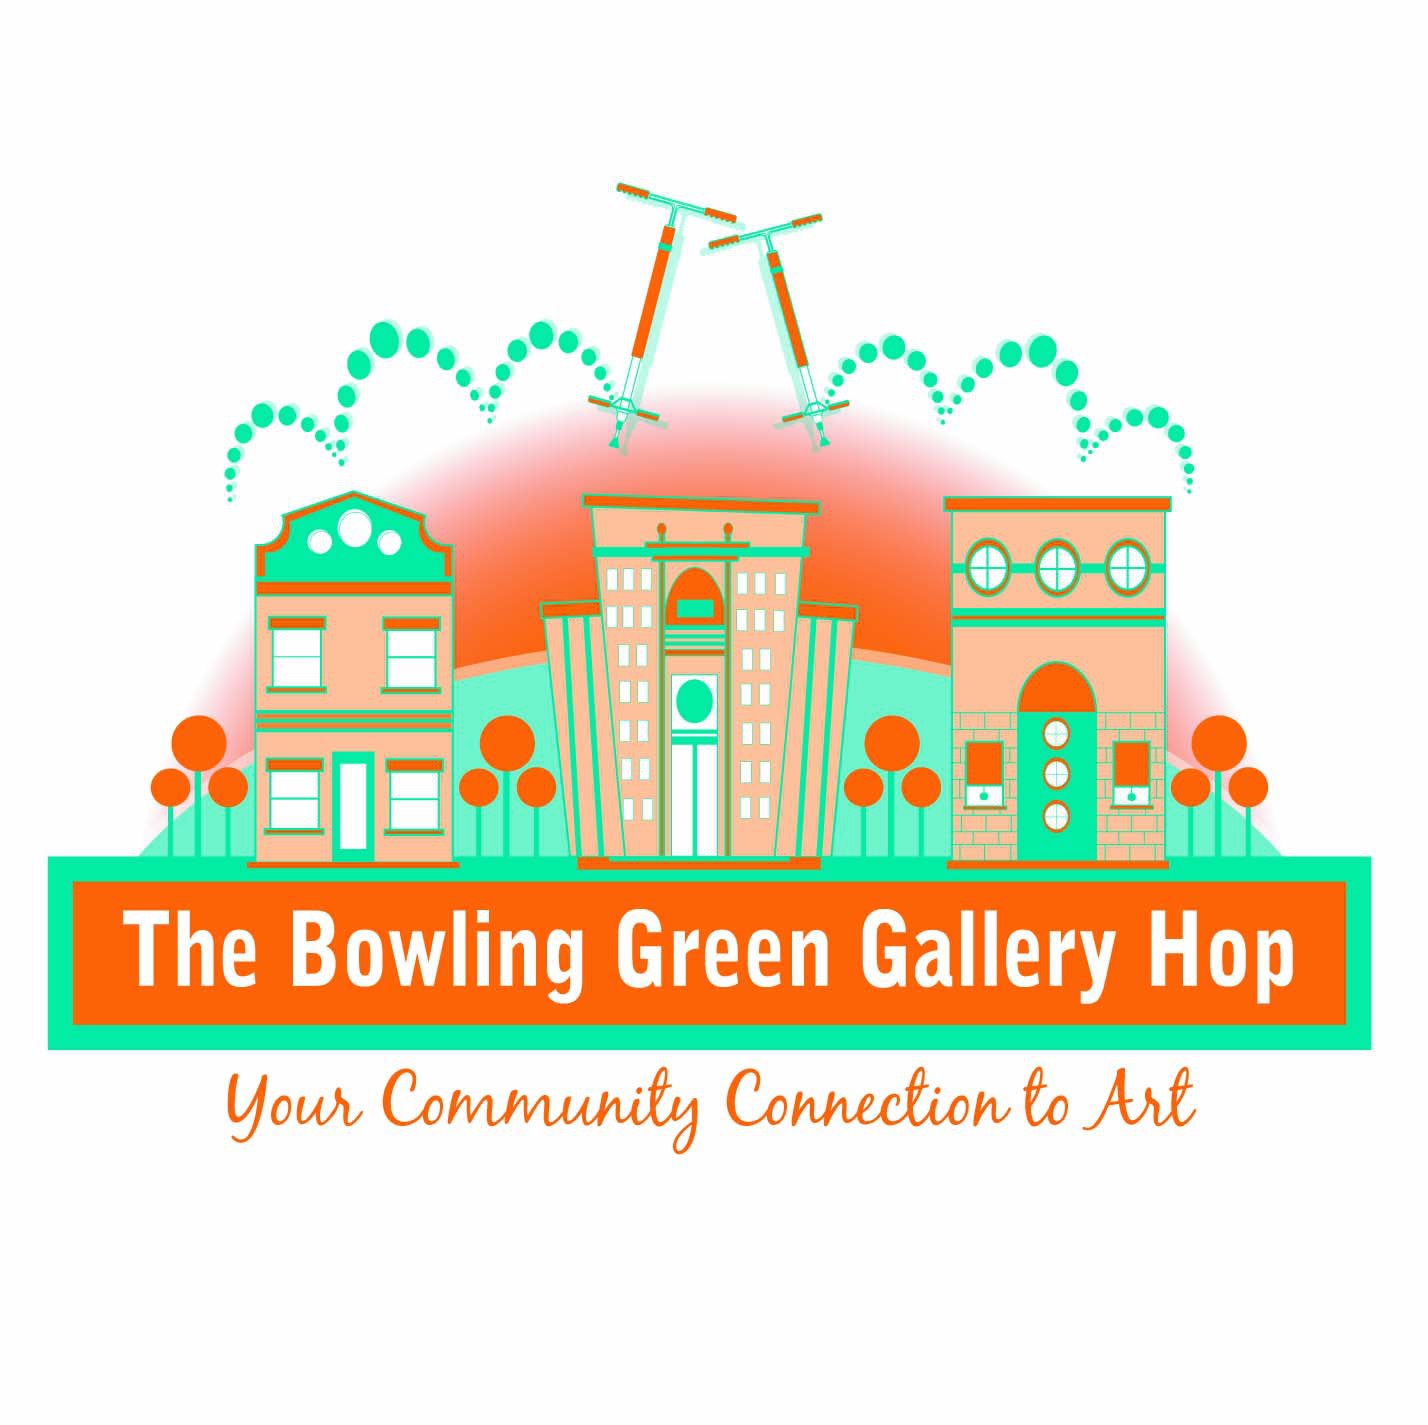 BG Gallery Hop